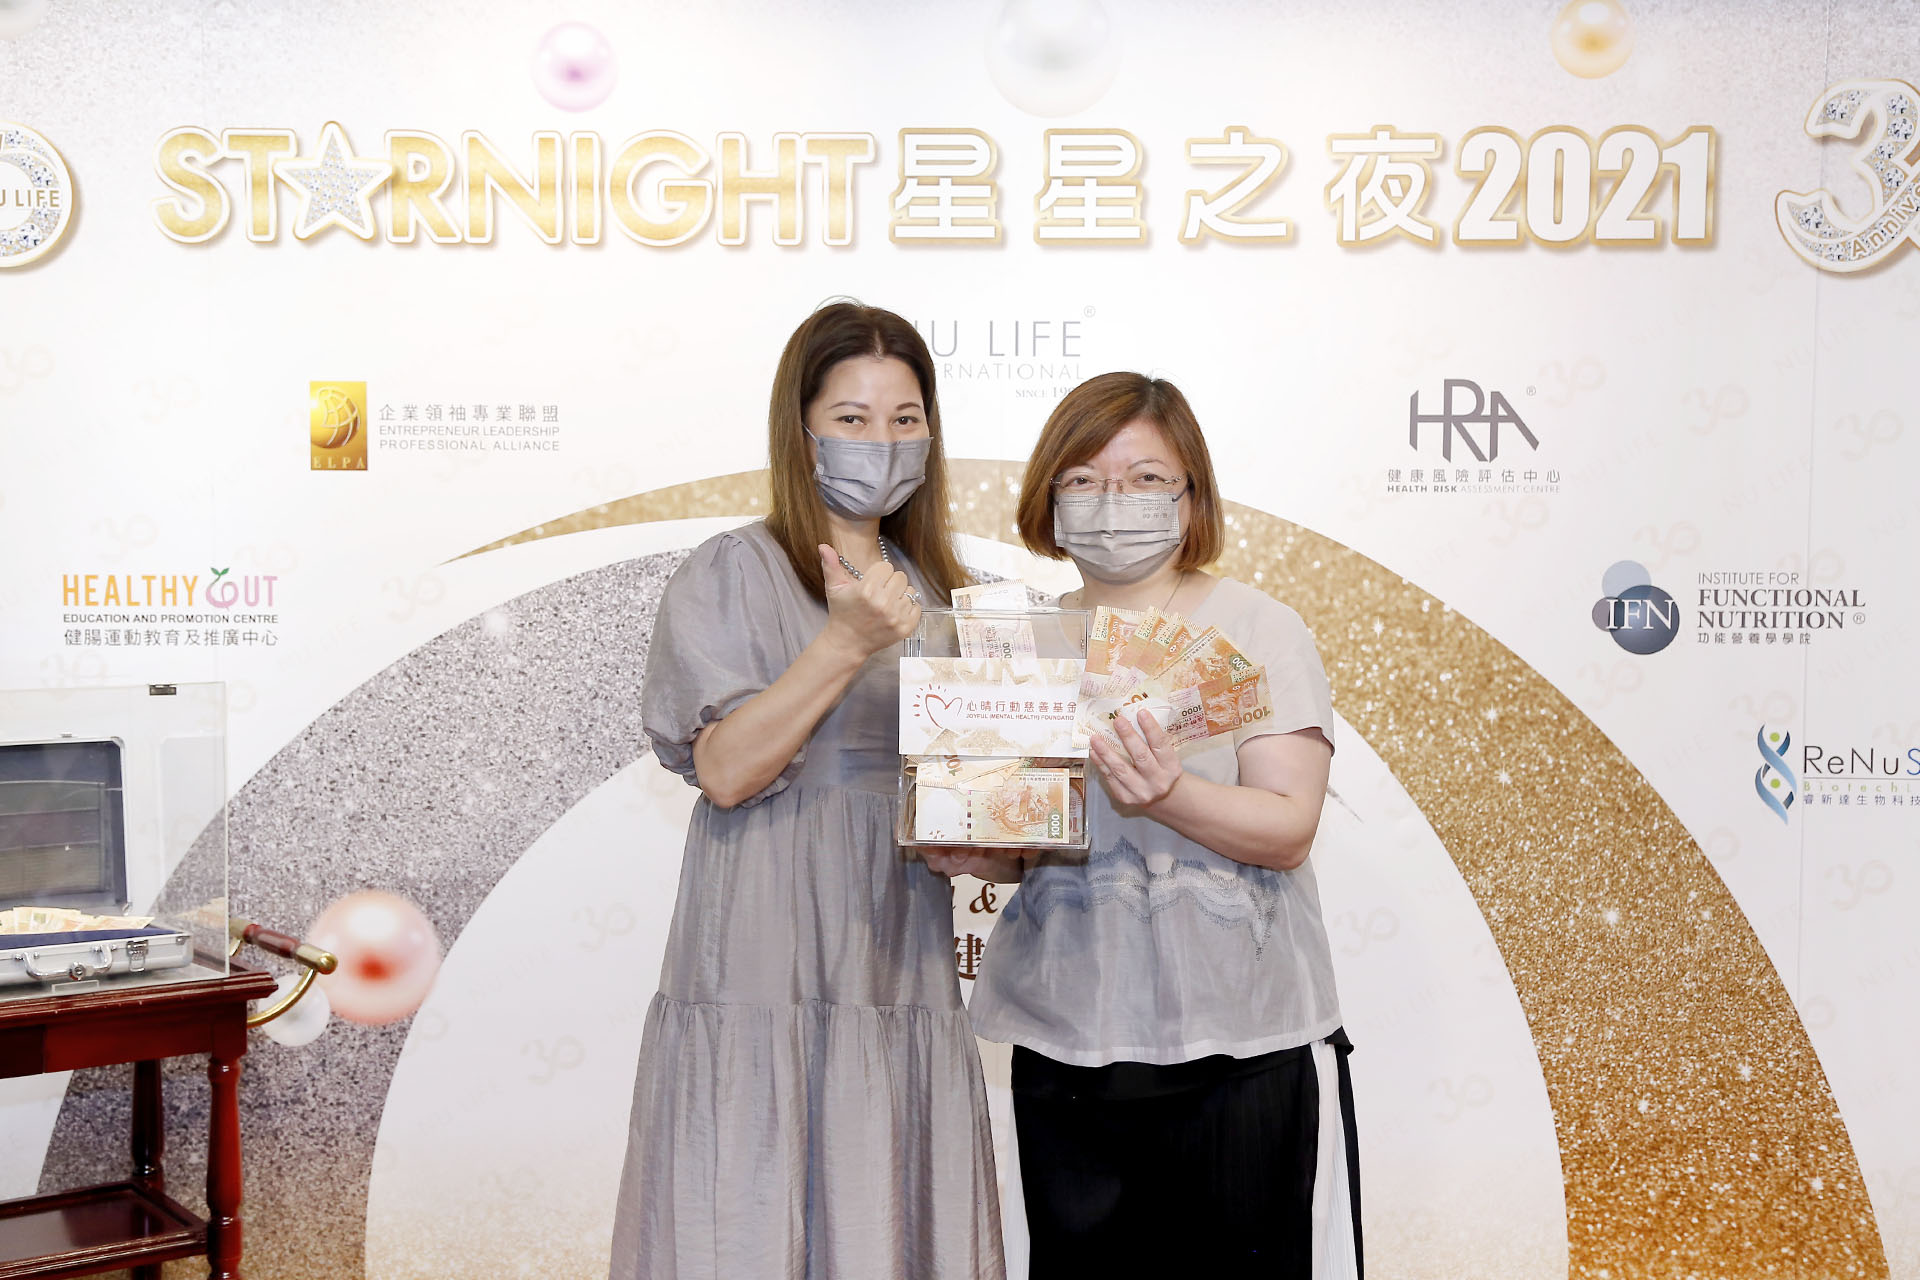 恭賀萬寧小姐從星級百萬富翁遊戲贏取HK$10,000獎金並與公司合共捐助HK$10,000予「心晴行動慈善基金」